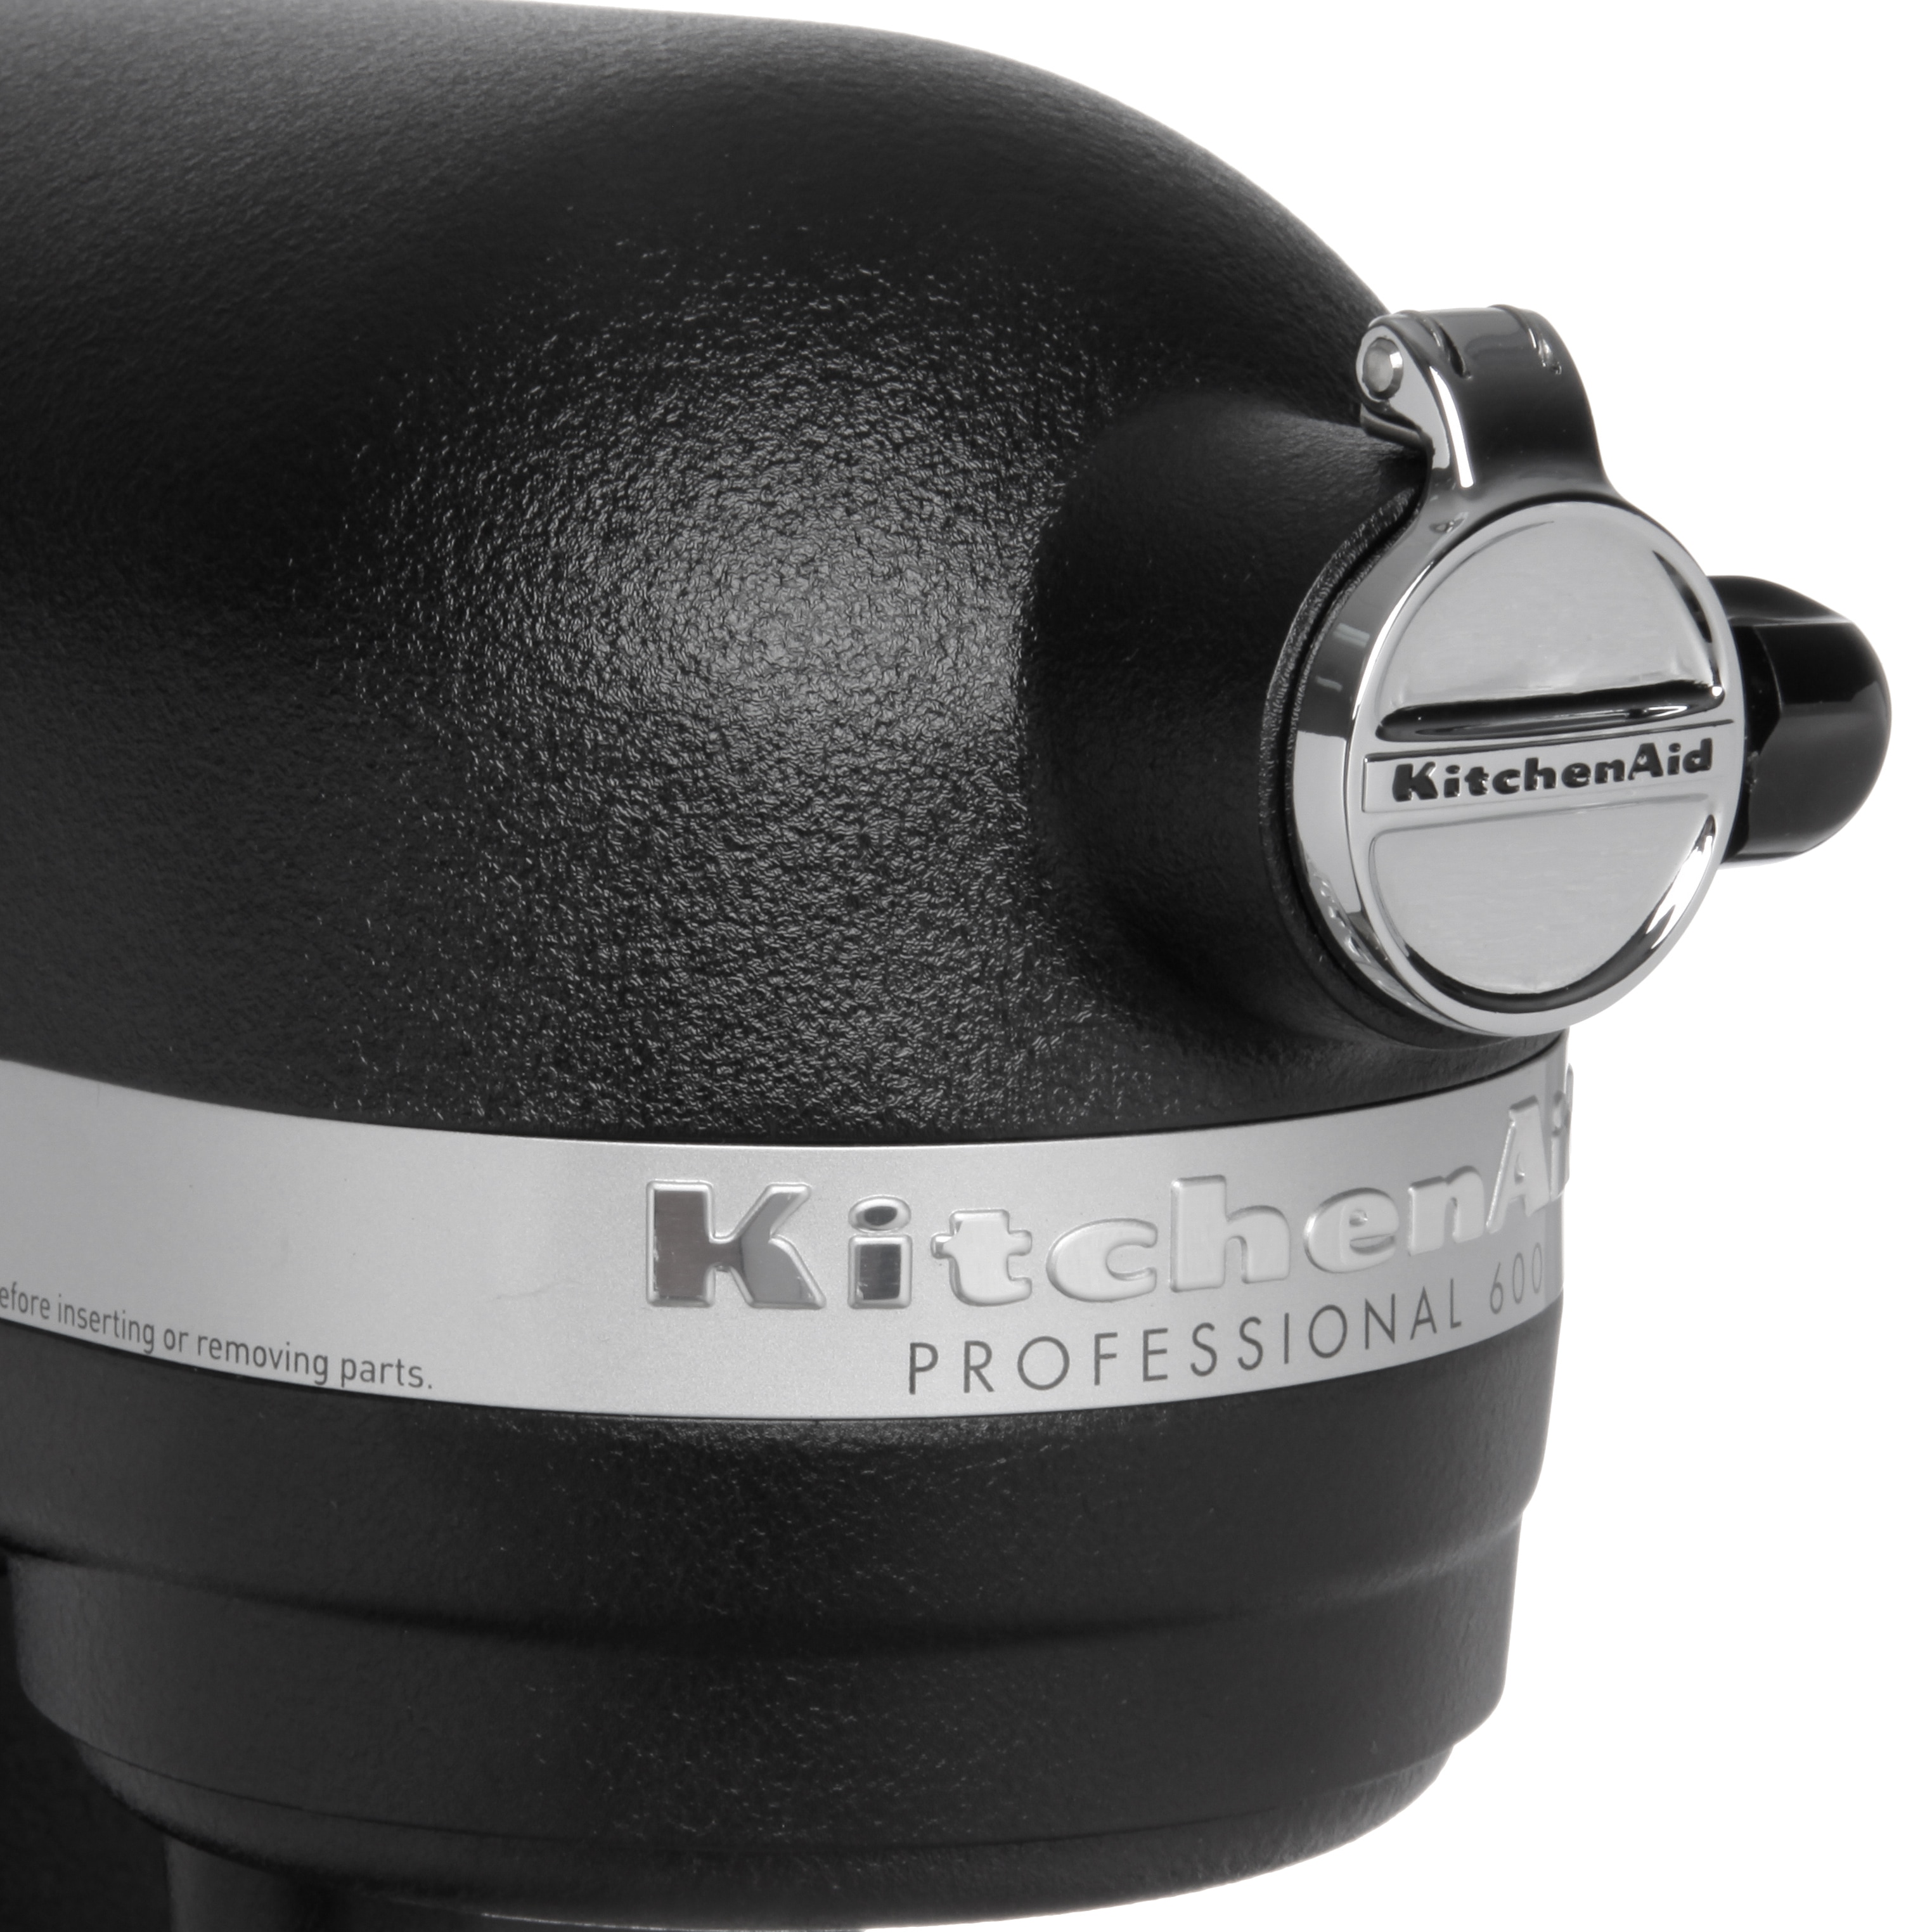 RKP26M1XAQ by KitchenAid - Refurbished Professional 600™ Series 6